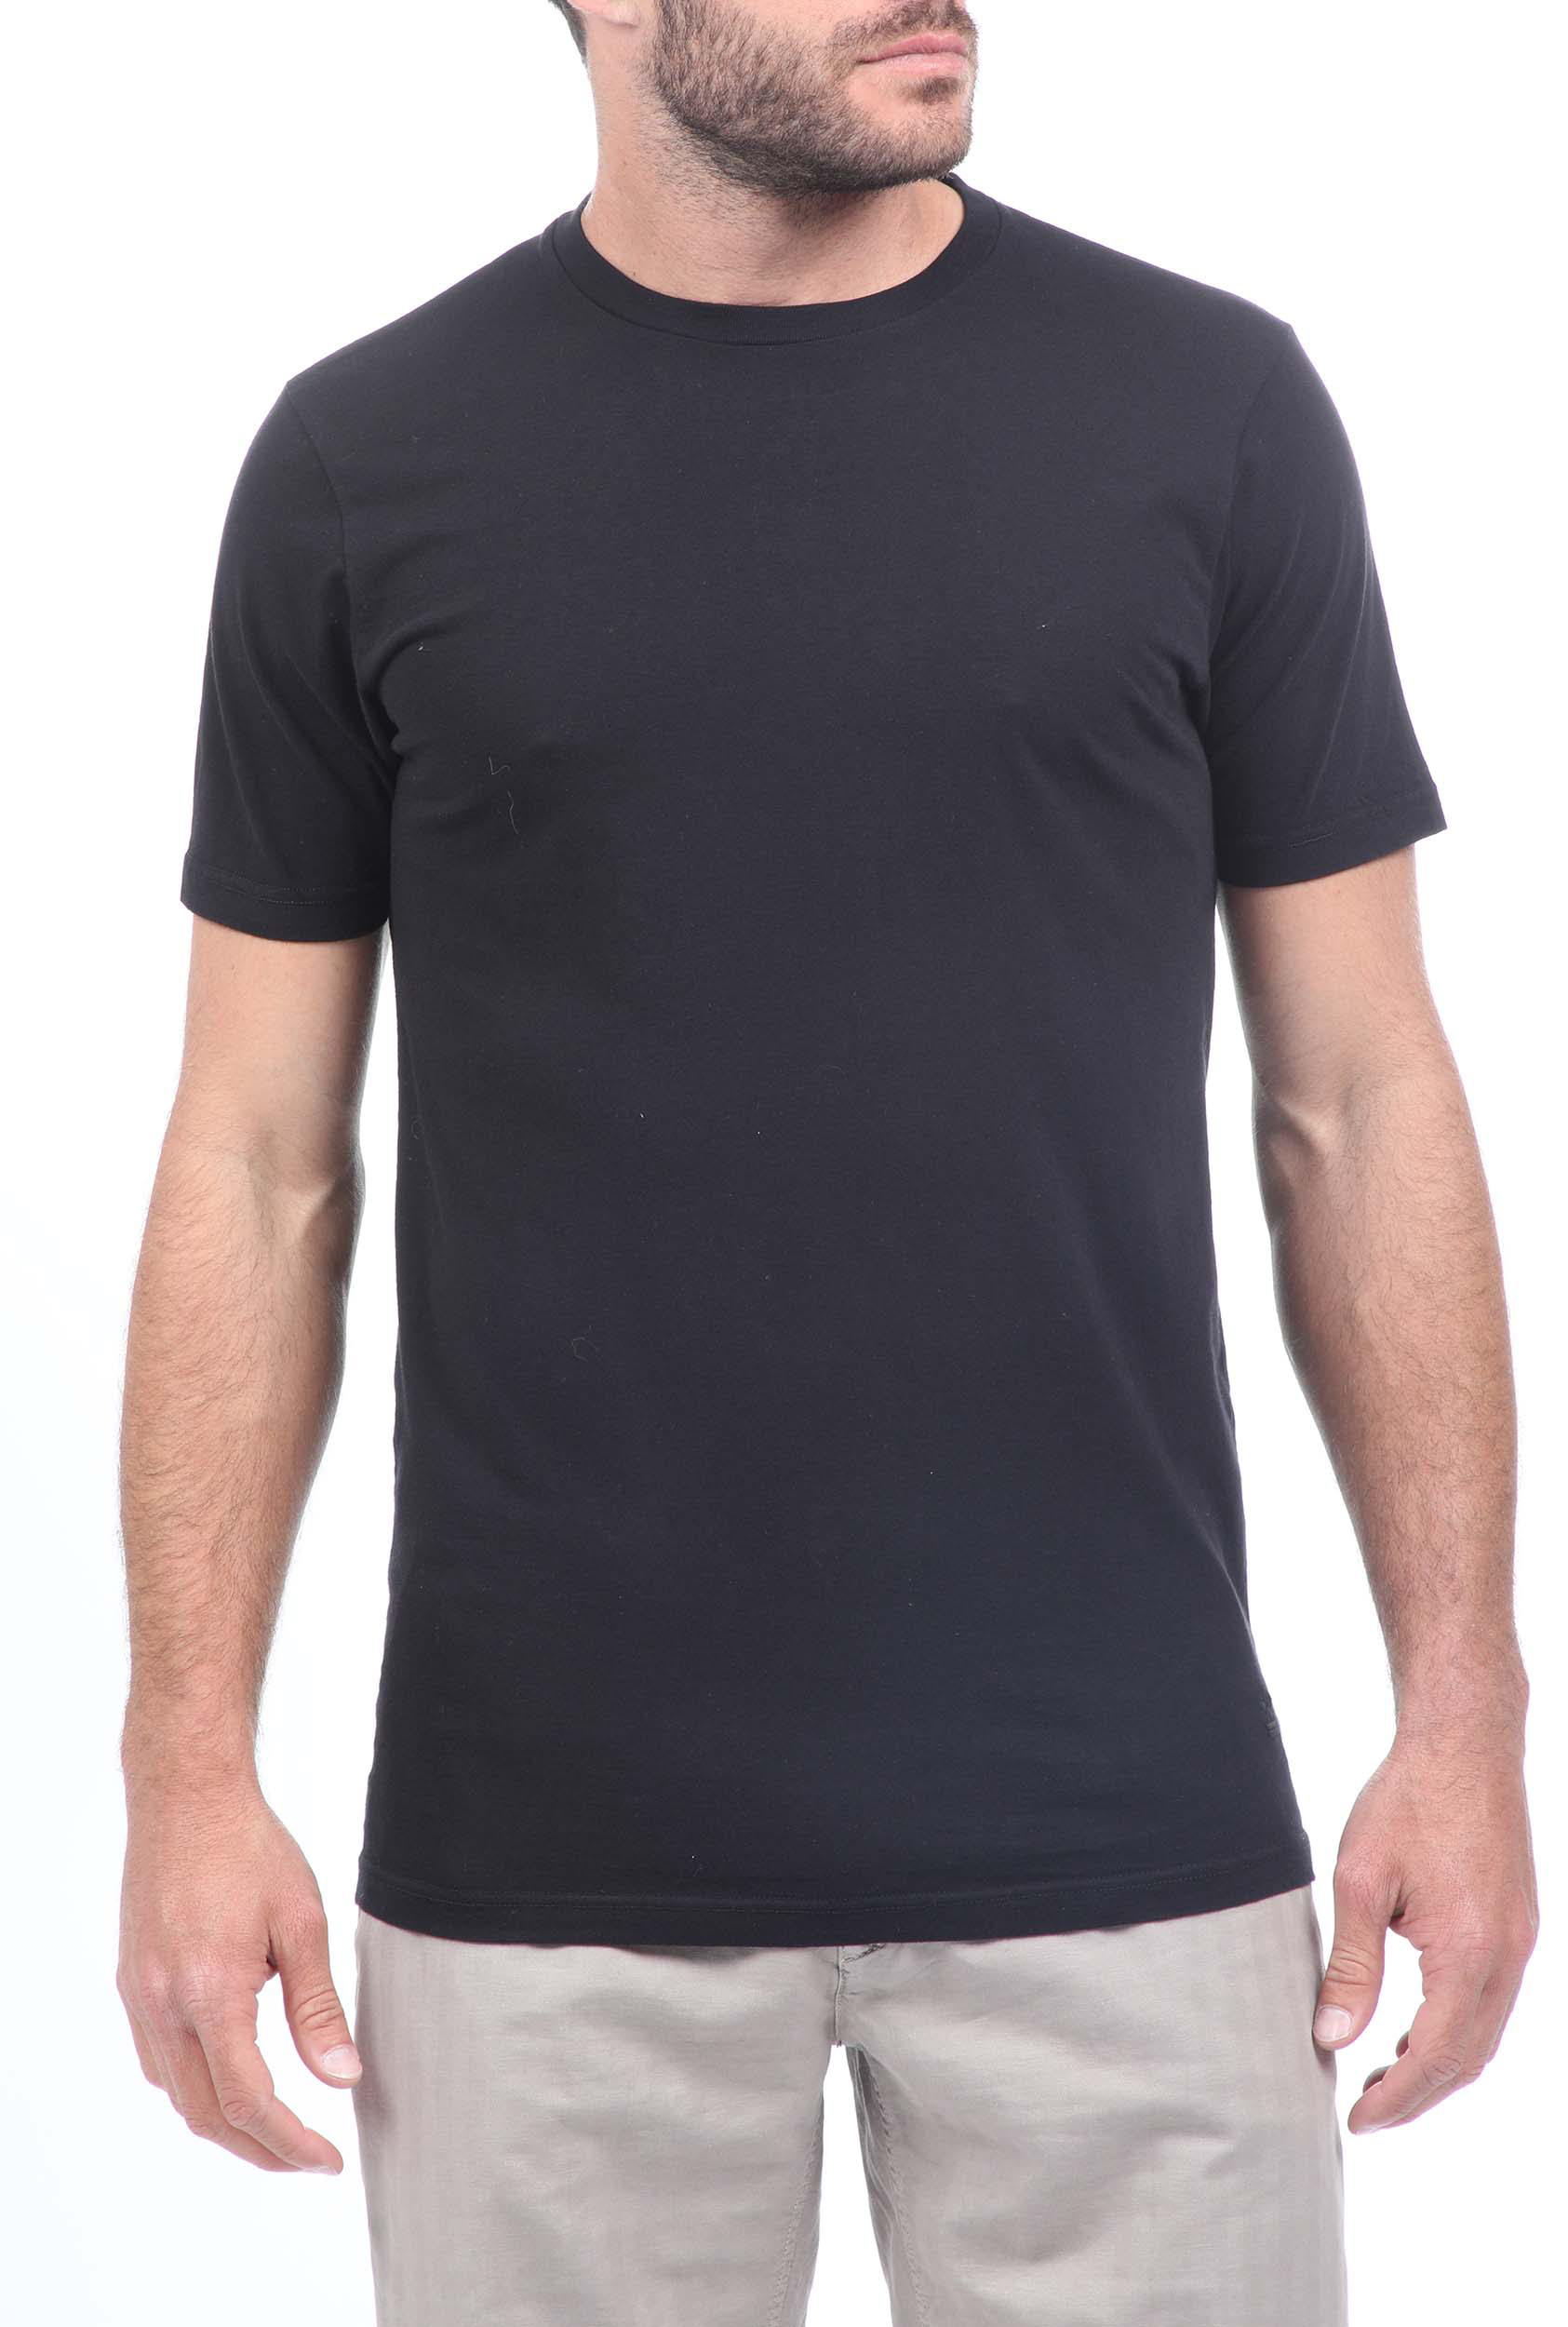 Ανδρικά/Ρούχα/Μπλούζες/Κοντομάνικες UNIFORM - Ανδρικό t-shirt UNIFORM μαύρο